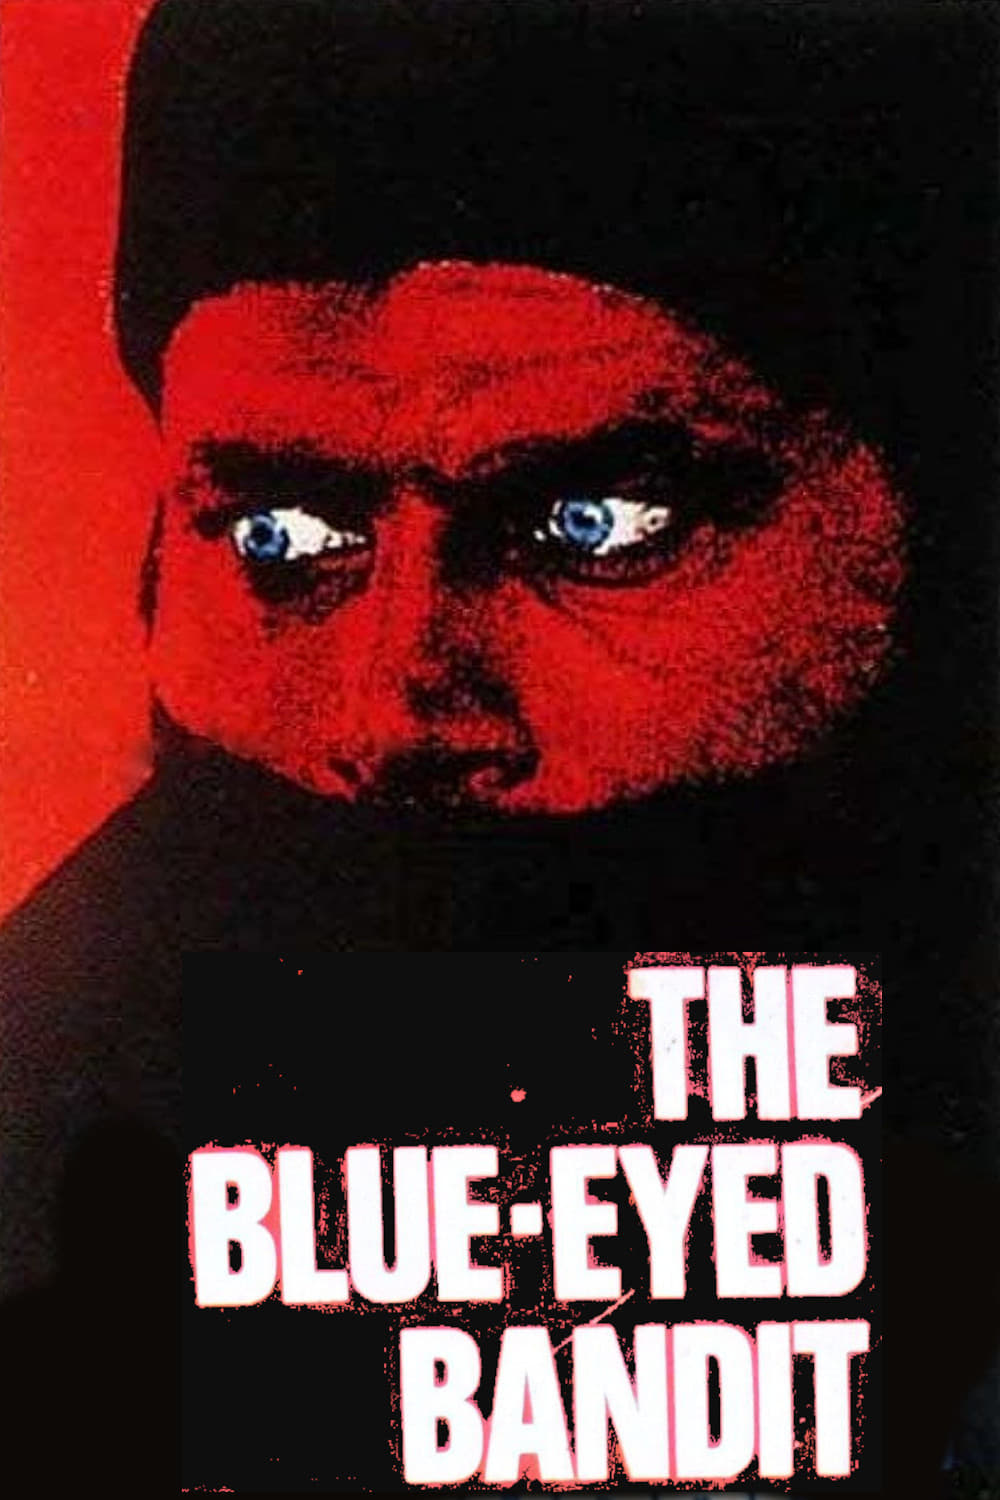 Der Bandit mit den schwarz-blauen Augen (1980)